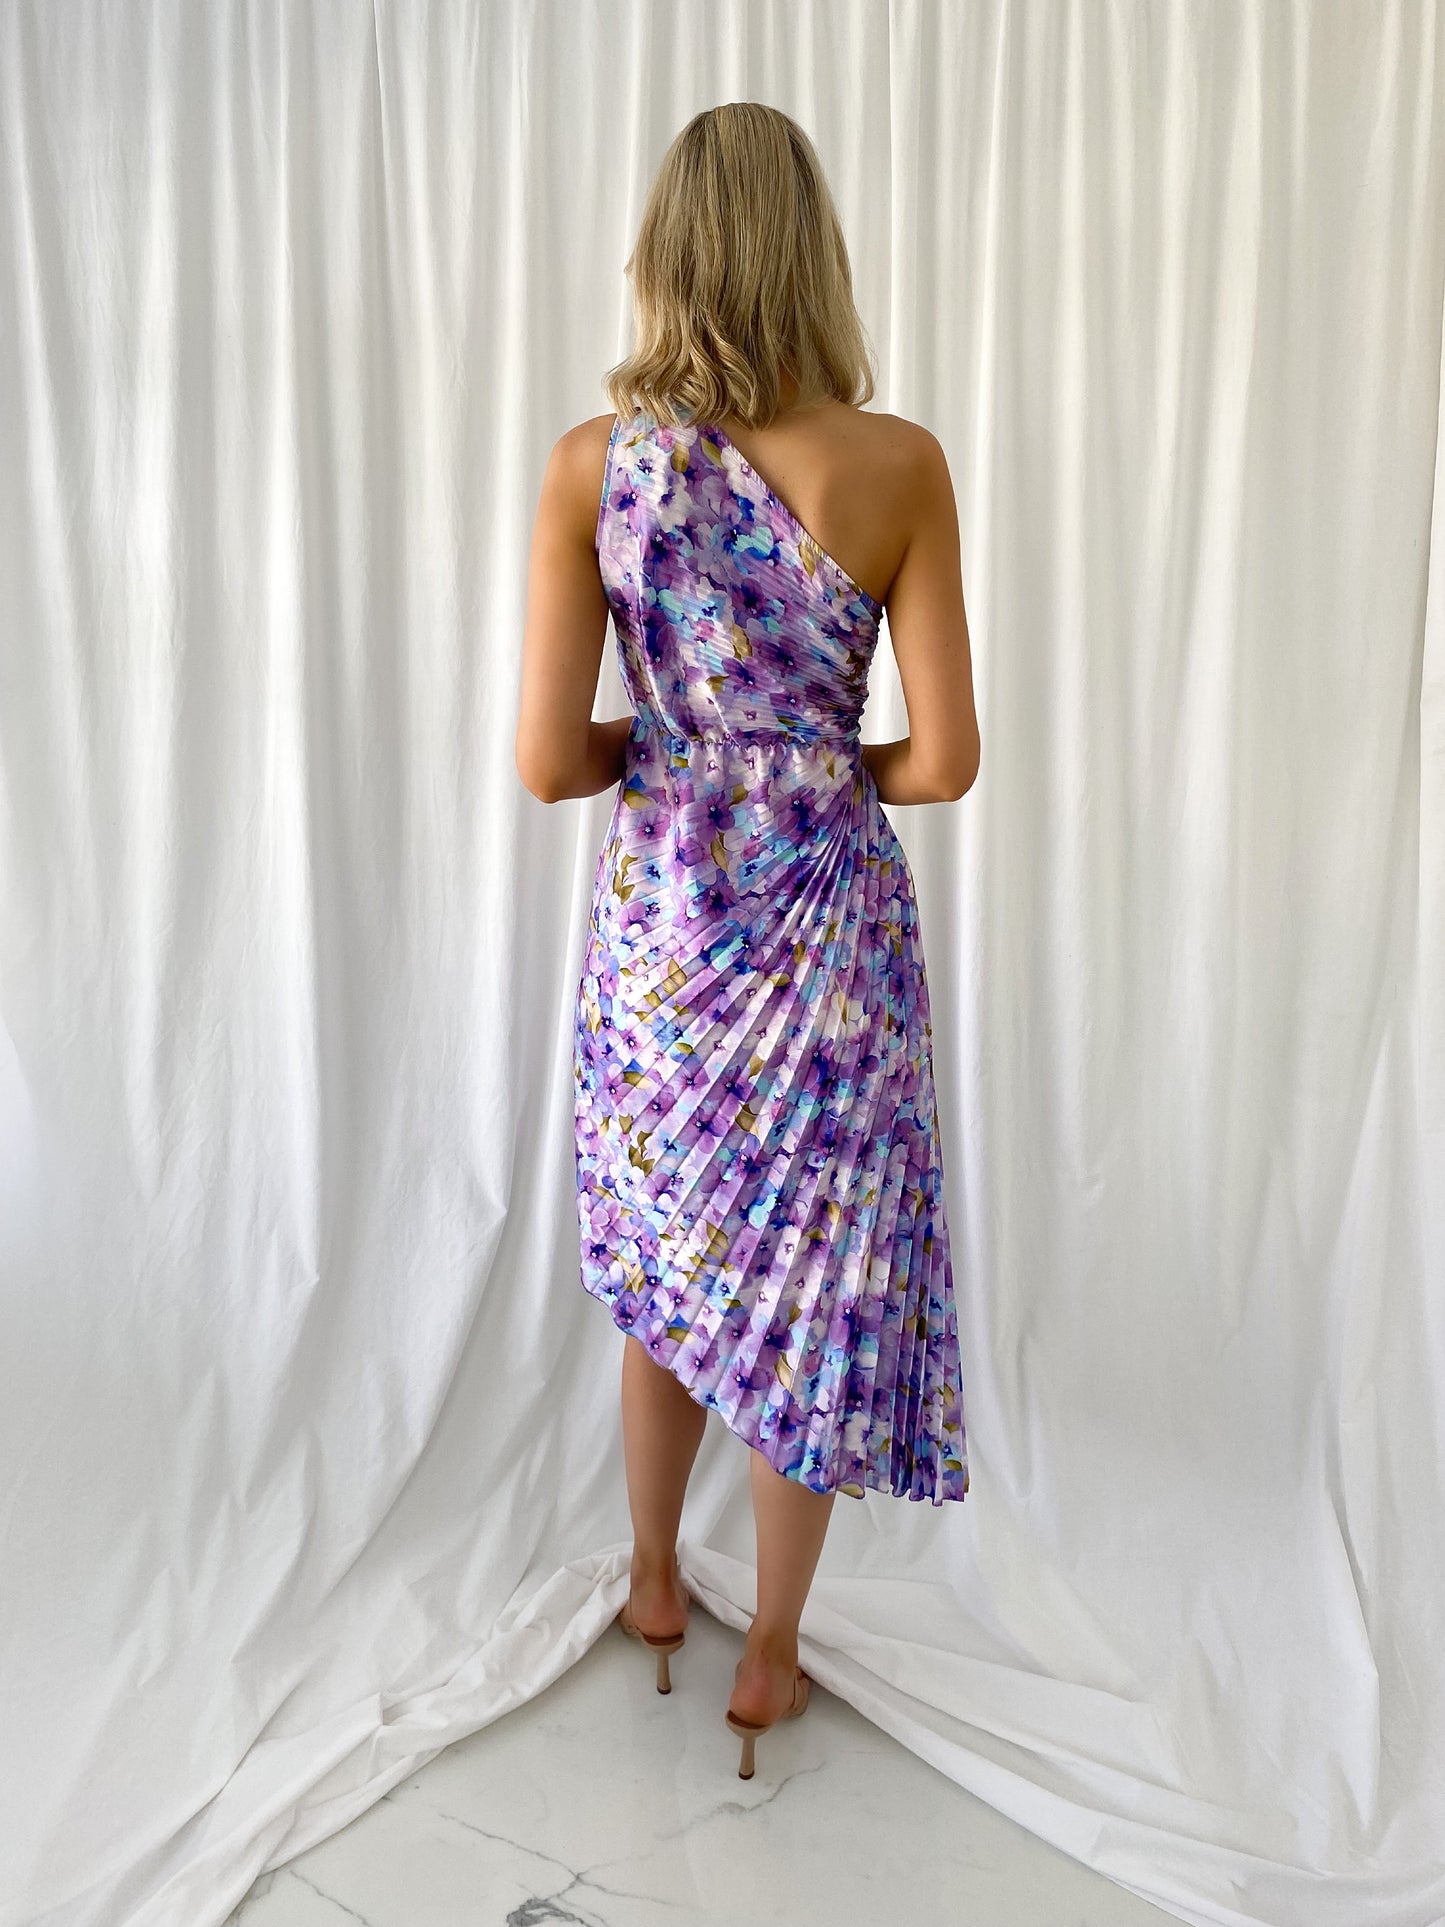 Margaret One Shoulder Draped Floral Dress - Purple and Blue